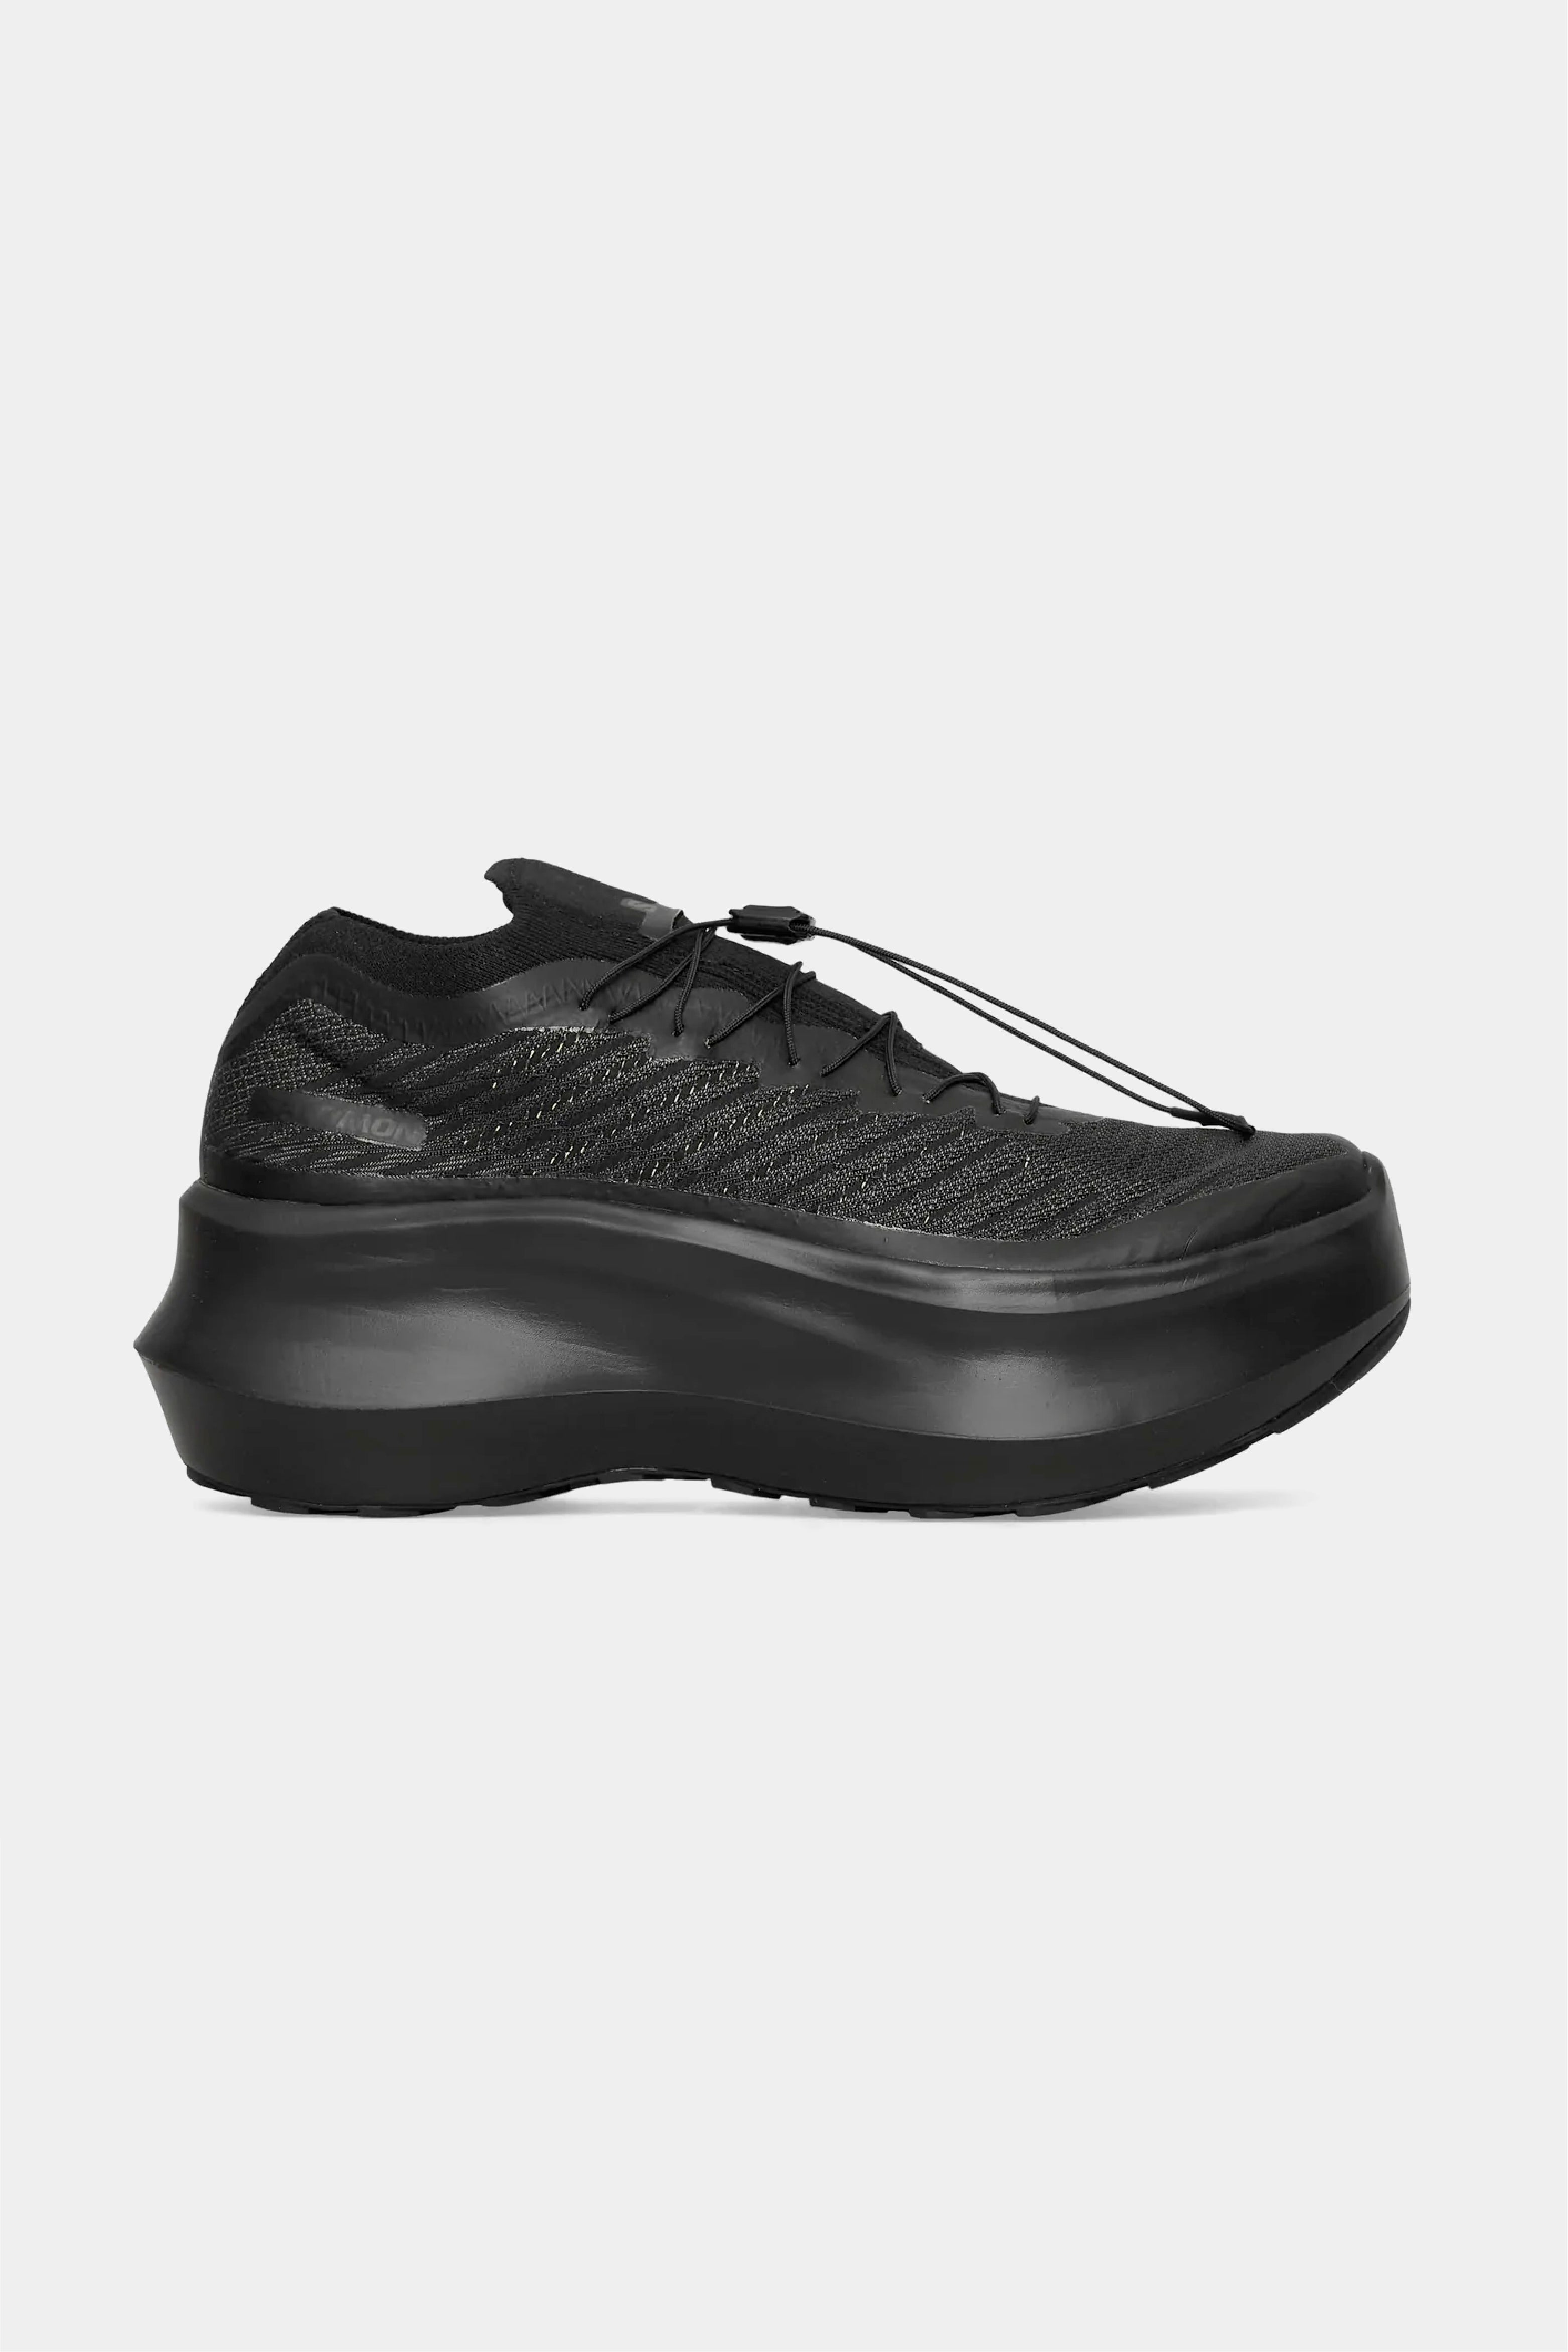 Selectshop FRAME - COMME DES GARÇONS Comme des Garçons x Salomon Pulsar Platform Footwear Concept Store Dubai